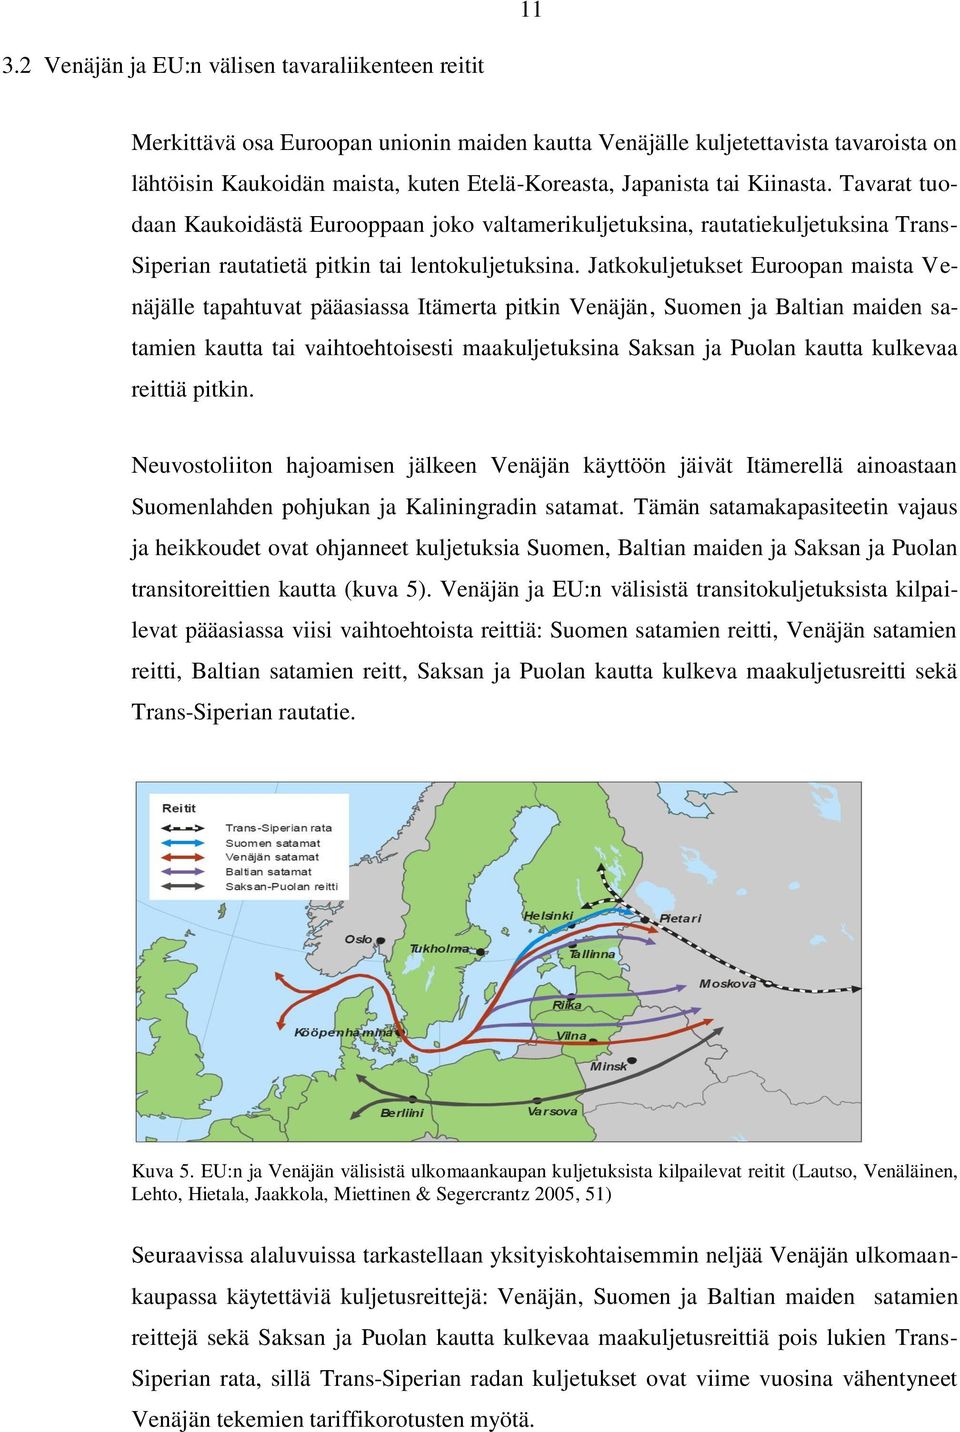 Jatkokuljetukset Euroopan maista Venäjälle tapahtuvat pääasiassa Itämerta pitkin Venäjän, Suomen ja Baltian maiden satamien kautta tai vaihtoehtoisesti maakuljetuksina Saksan ja Puolan kautta